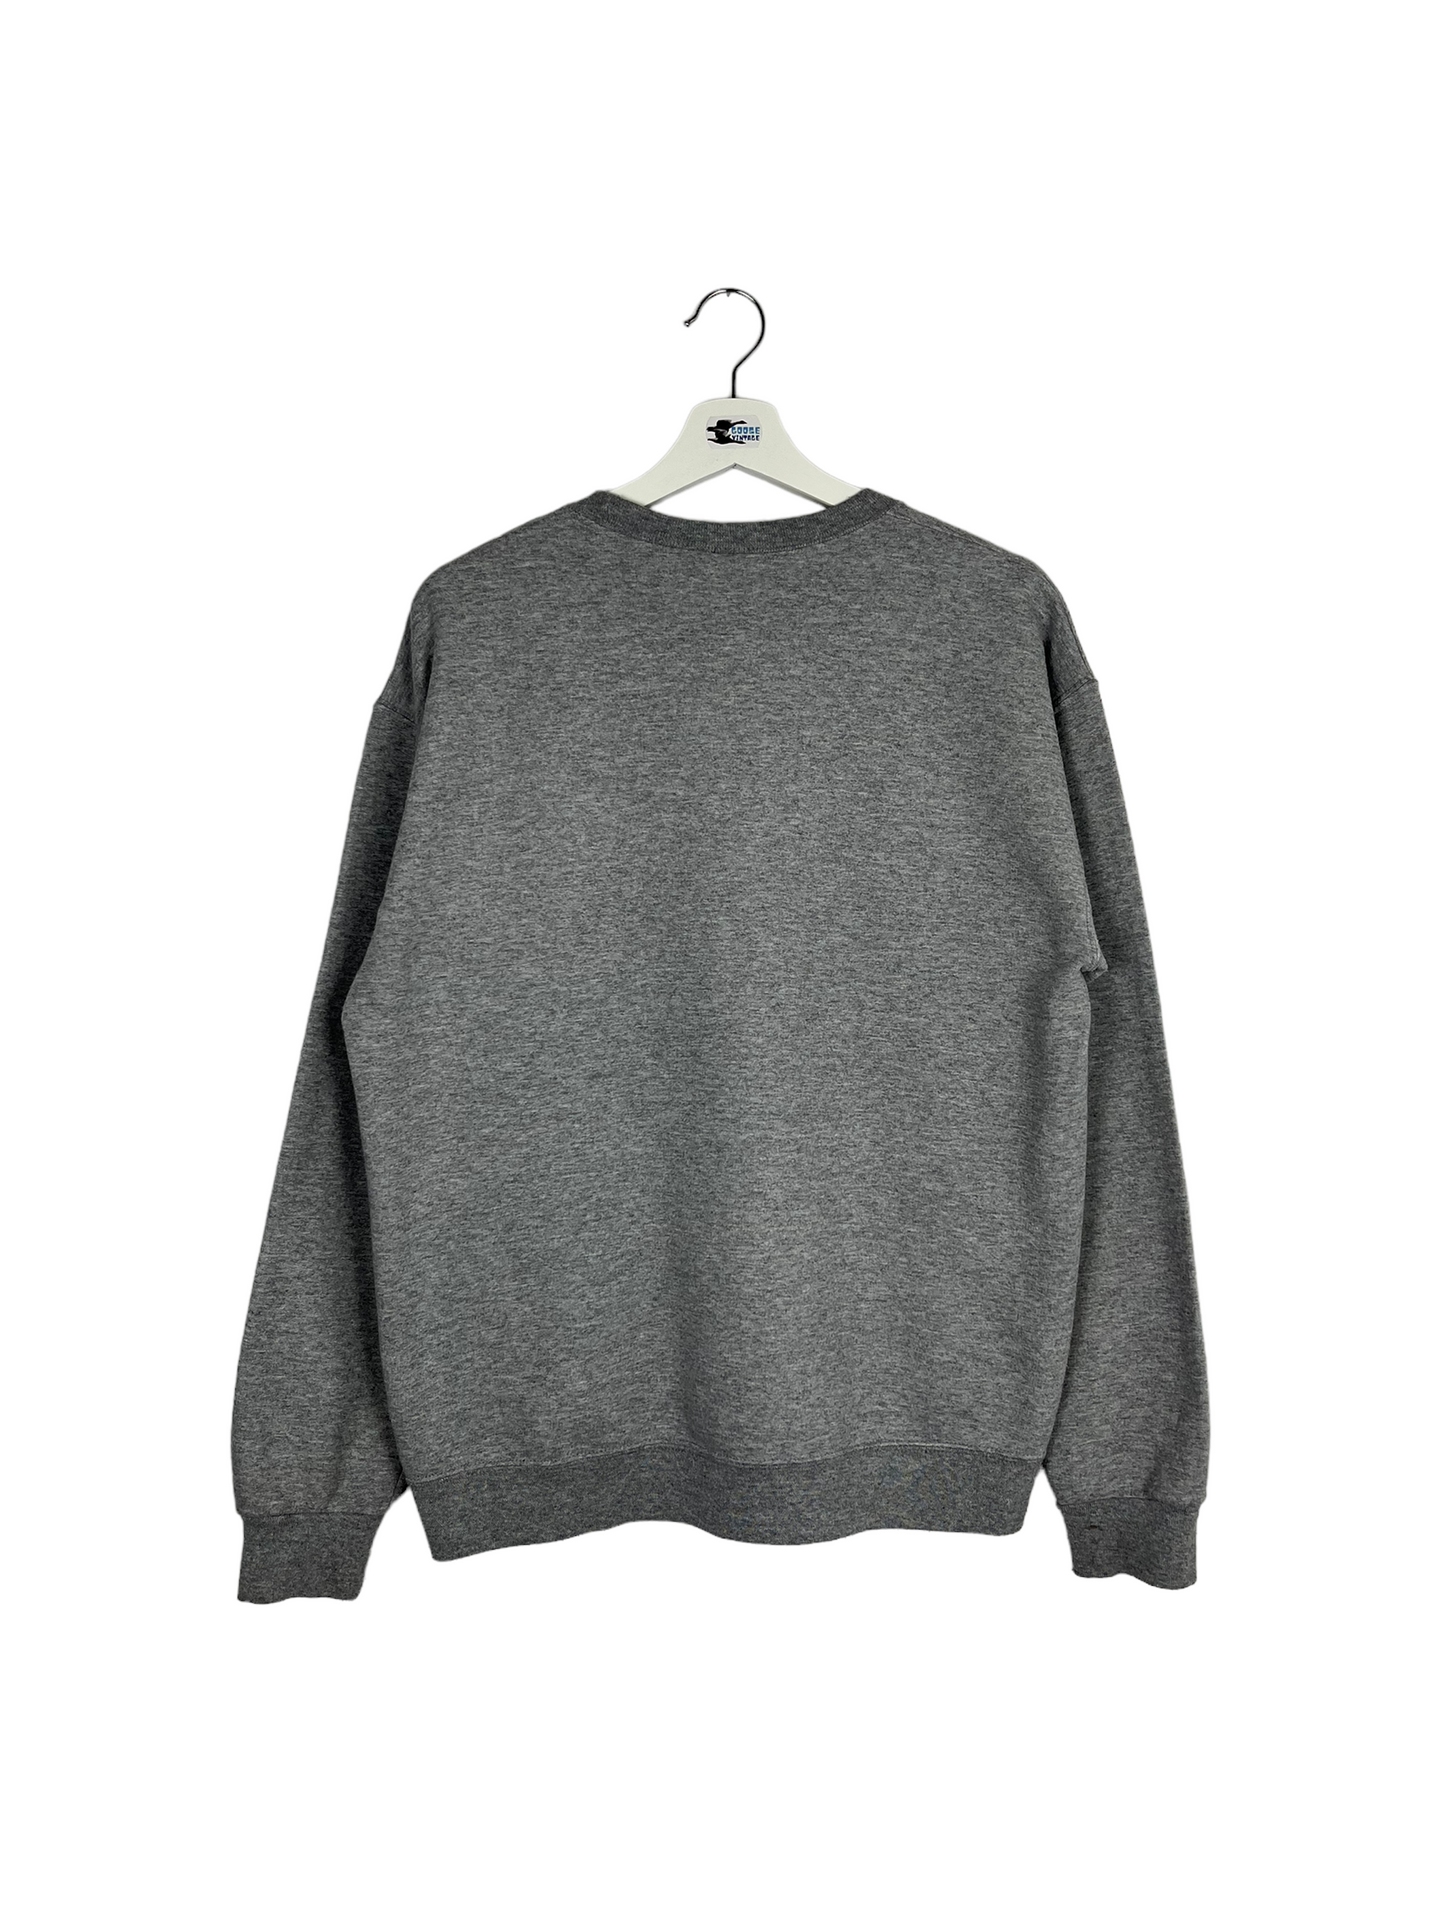 Vintage 90’s Tennessee Sweatshirt - Medium